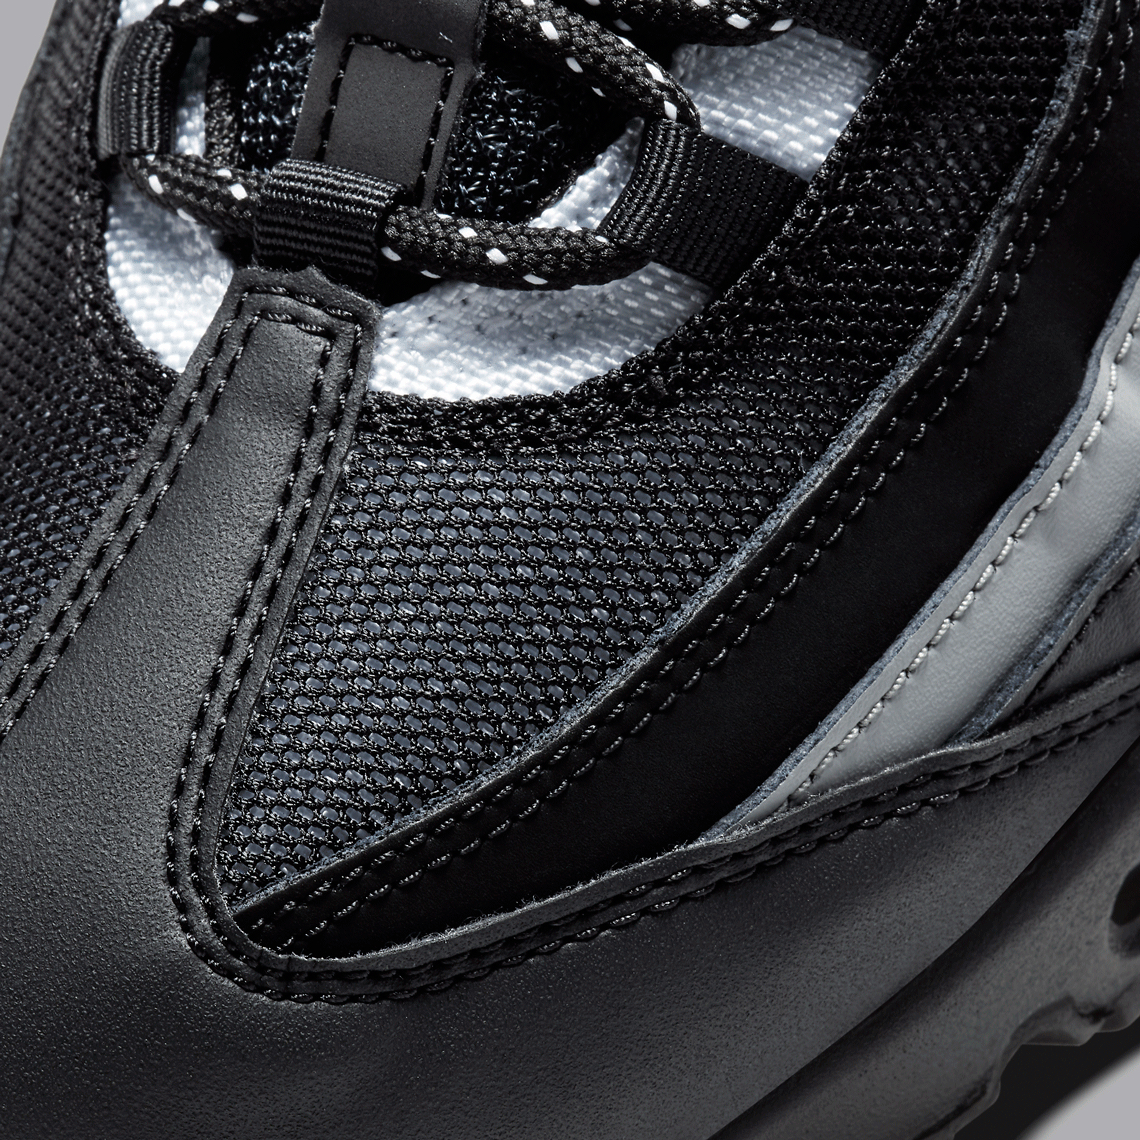 Nike Air Max 95 Black Dark Smoke Grey CT1805-001 | SneakerNews.com